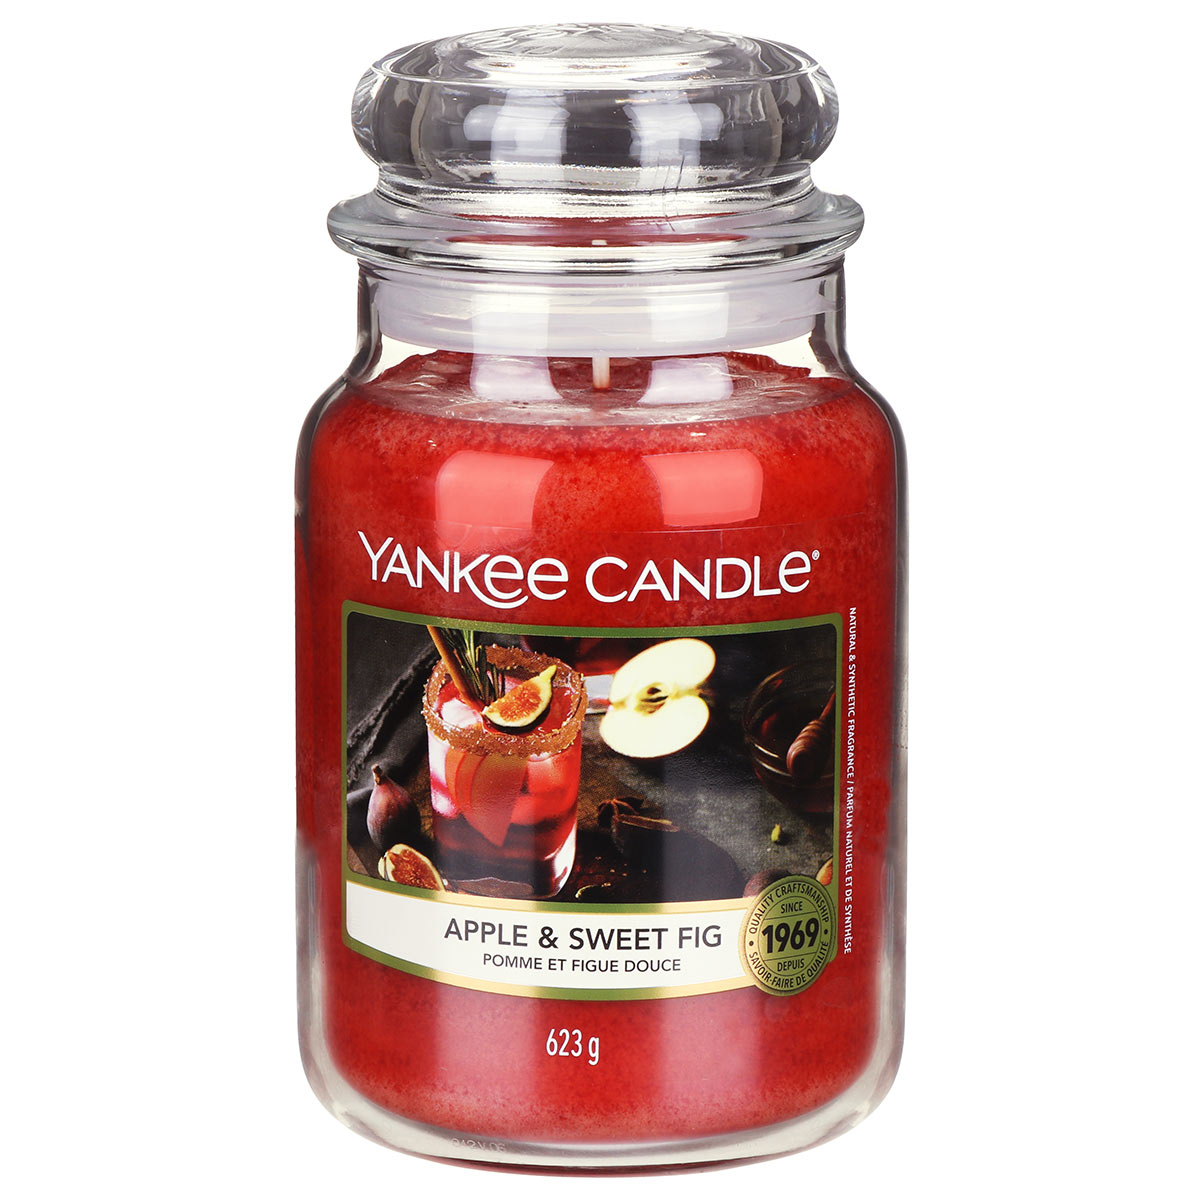 le Yankee Candle sono candele che profumano e personalizzano la tua casa  CANDELE PROFUMATE